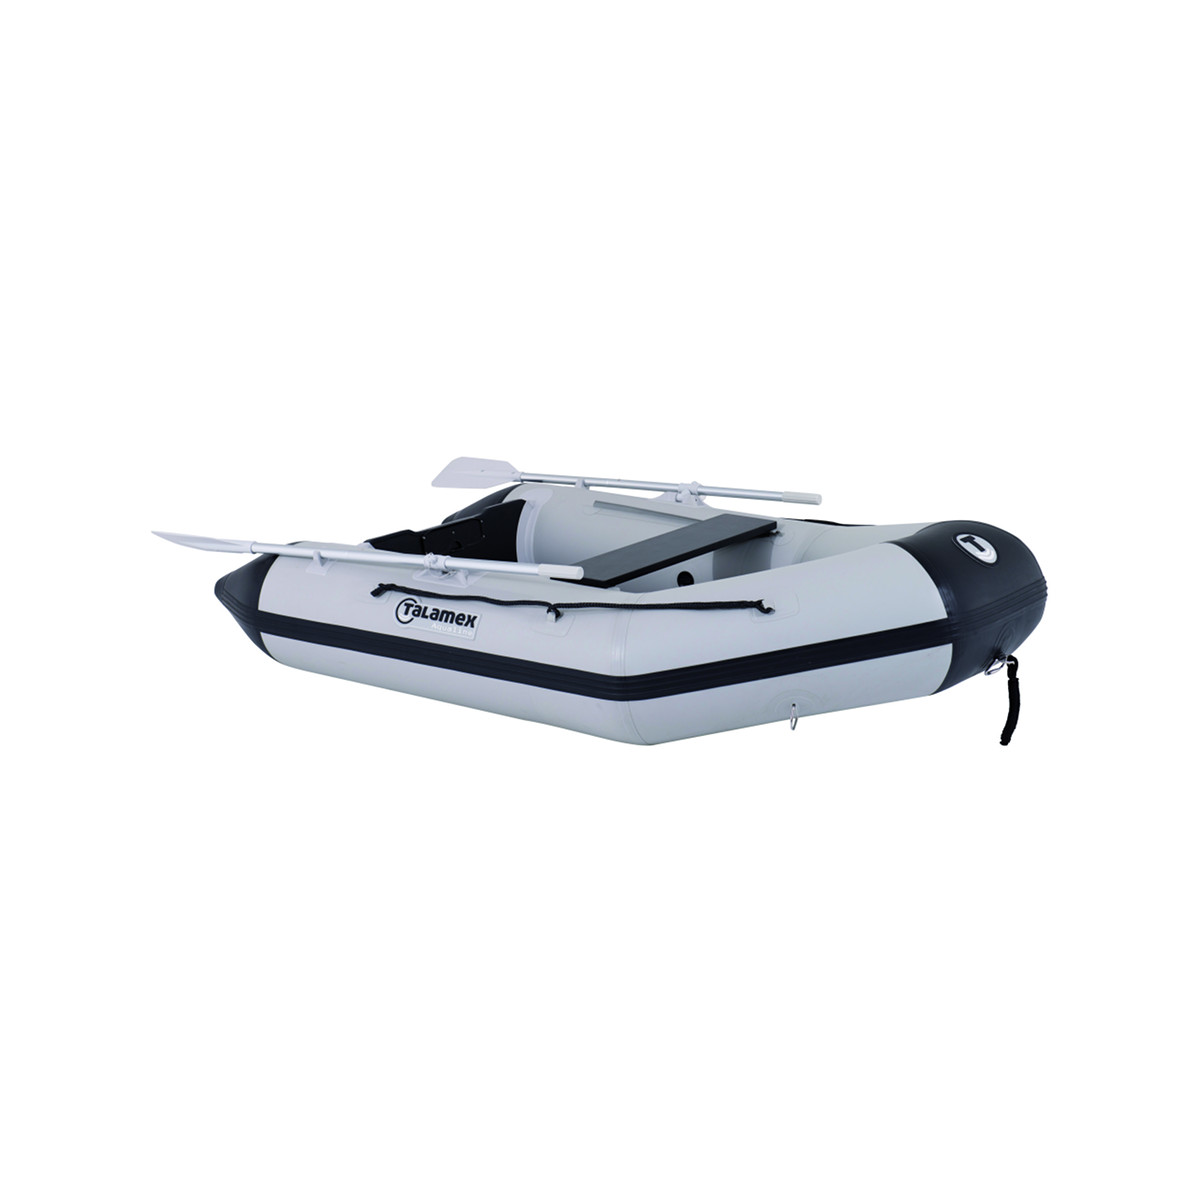 Talamex Aqualine QLX350 opblaasbare rubberboot met aluminium bodem, lengte 3,50m, lengte 3,50m, grijs